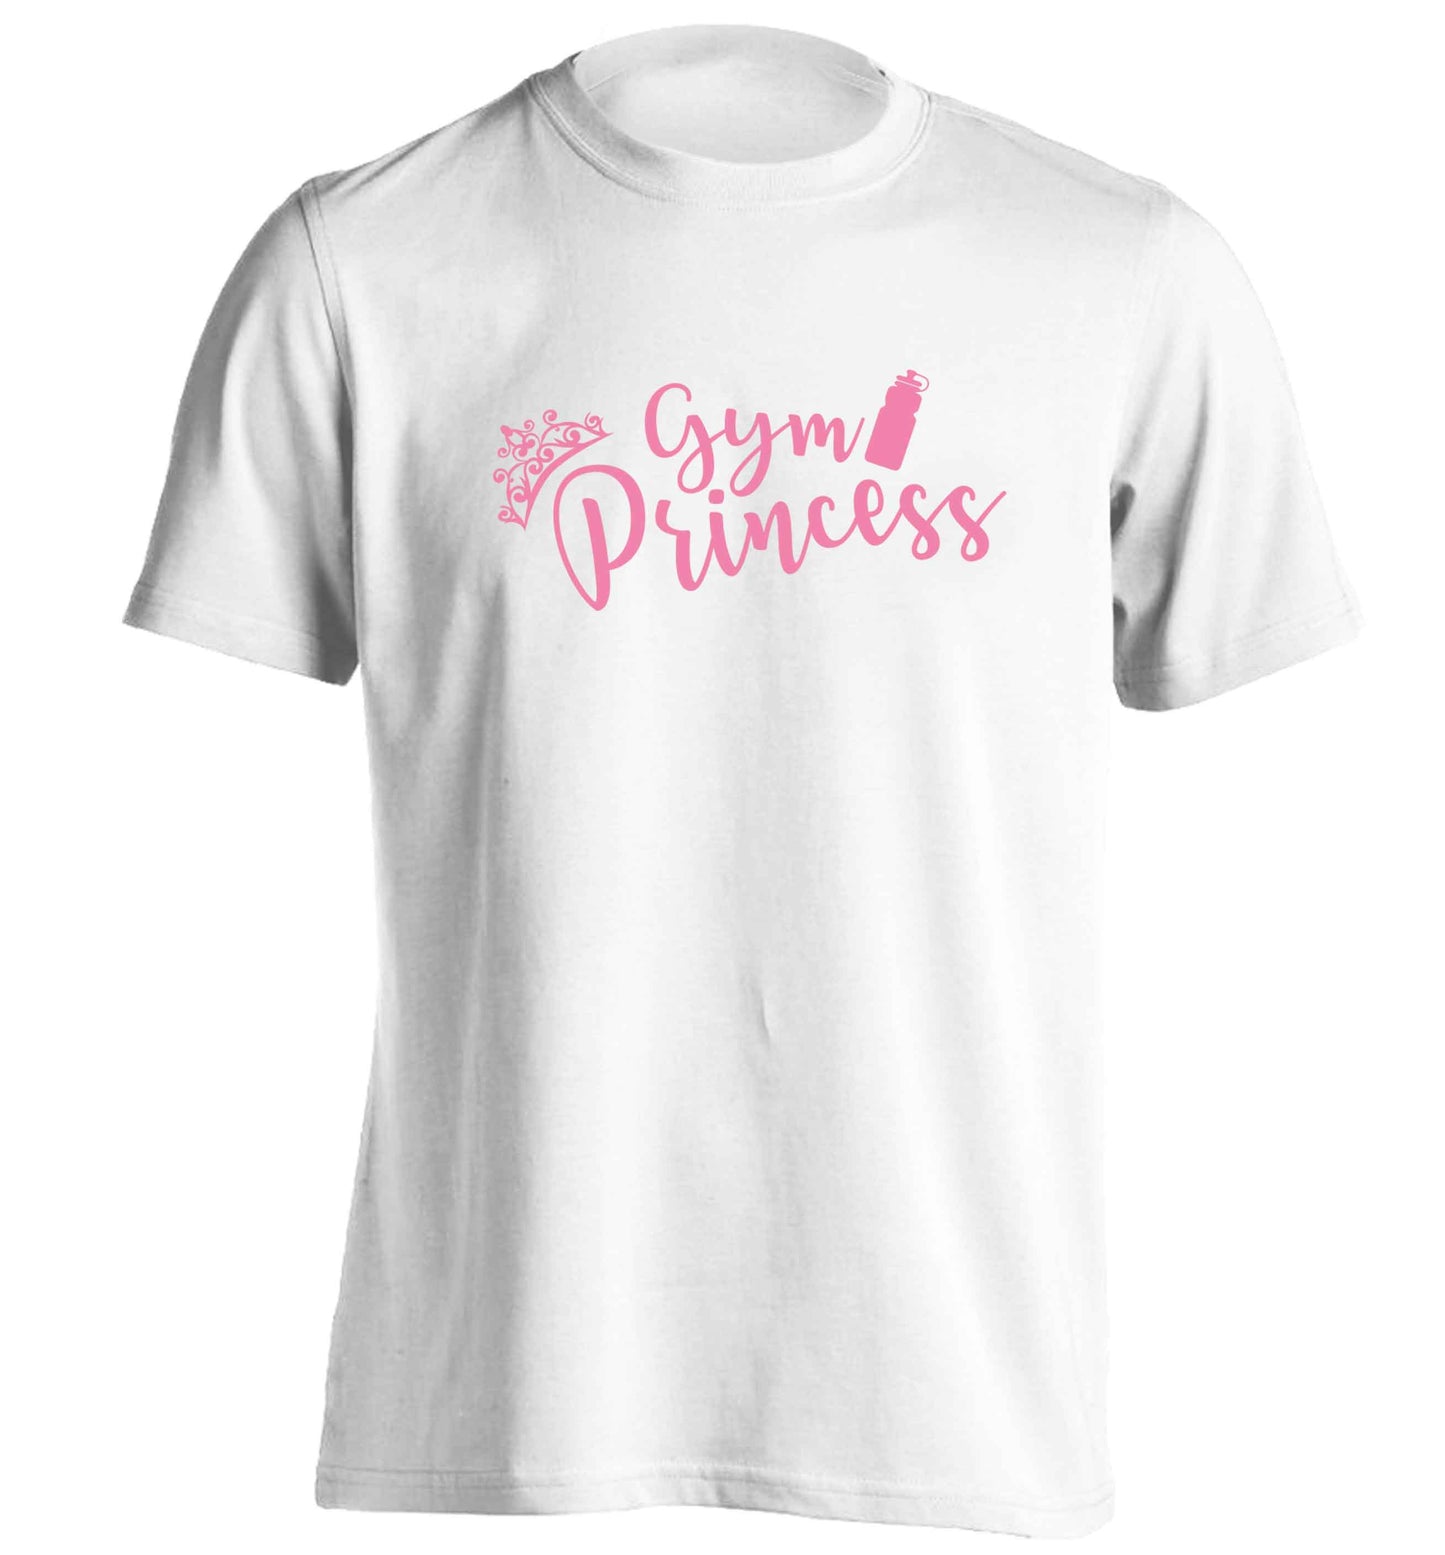 Gym princess adults unisex white Tshirt 2XL